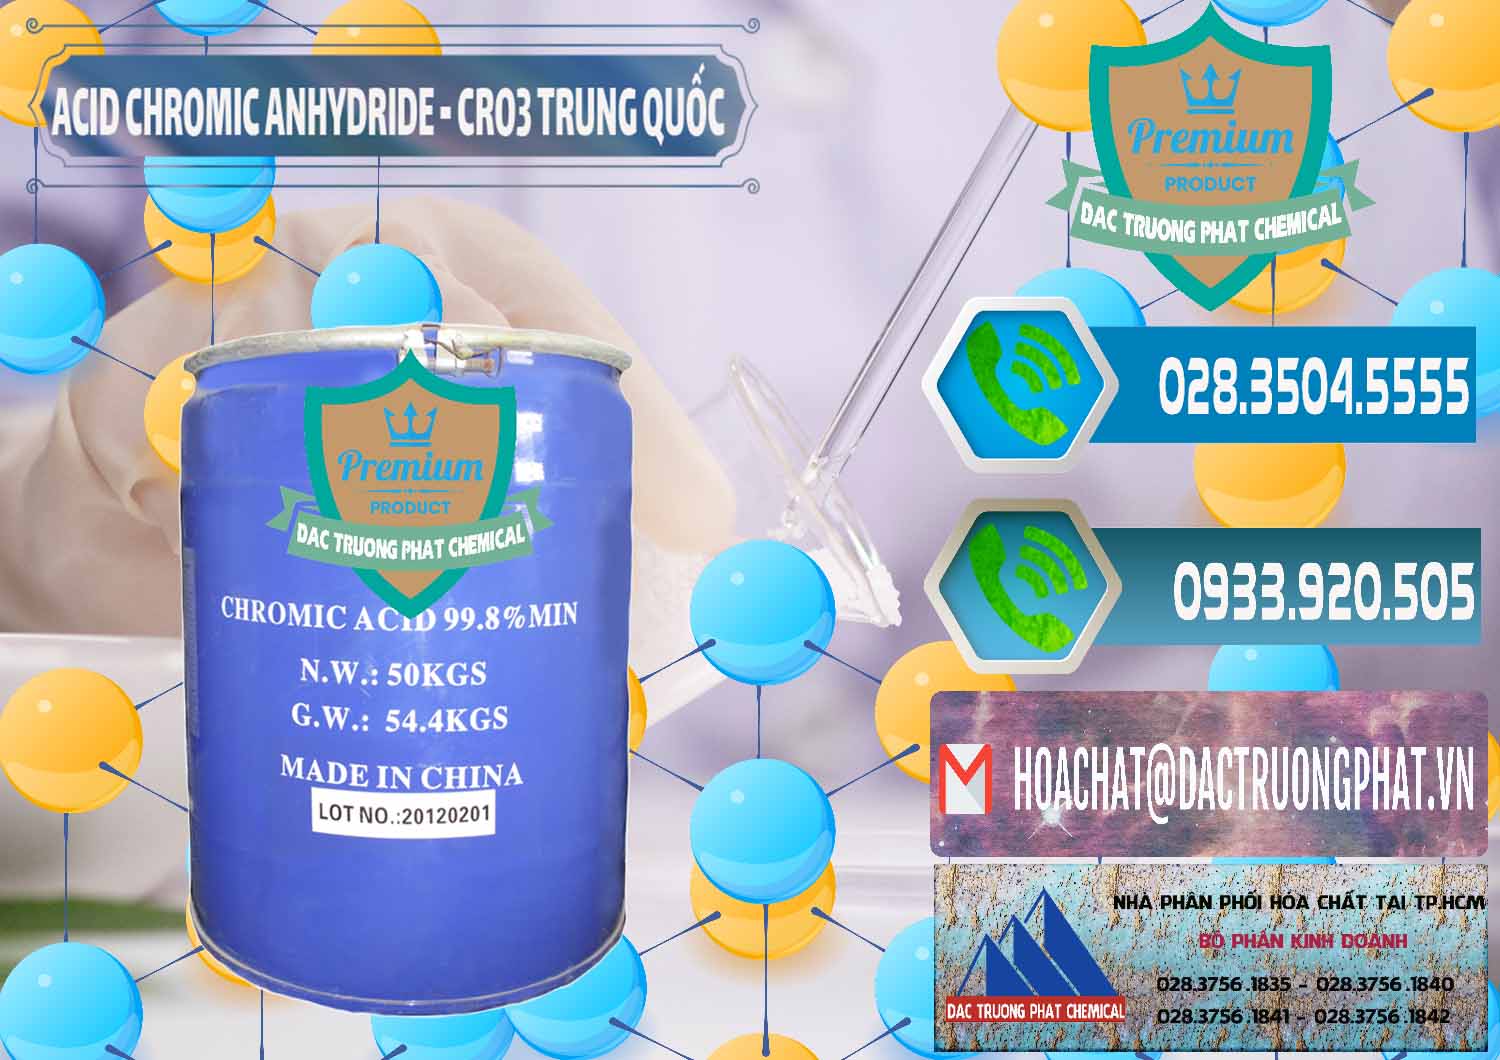 Cty chuyên cung cấp ( bán ) Acid Chromic Anhydride - Cromic CRO3 Trung Quốc China - 0007 - Công ty cung cấp - phân phối hóa chất tại TP.HCM - congtyhoachat.net